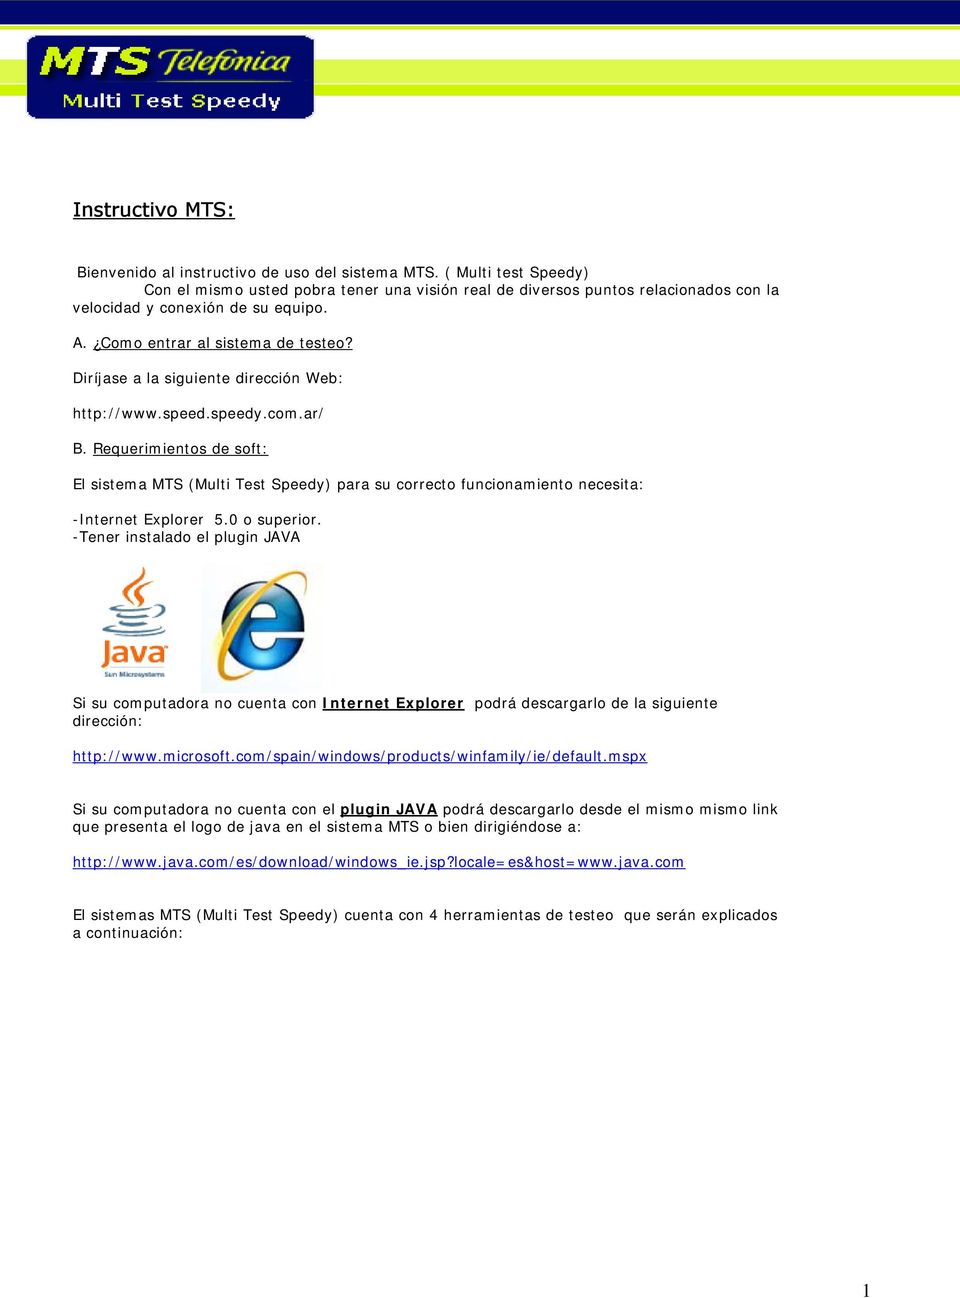 Diríjase a la siguiente dirección Web: http://www.speed.speedy.com.ar/ B. Requerimientos de soft: El sistema MTS (Multi Test Speedy) para su correcto funcionamiento necesita: -Internet Explorer 5.